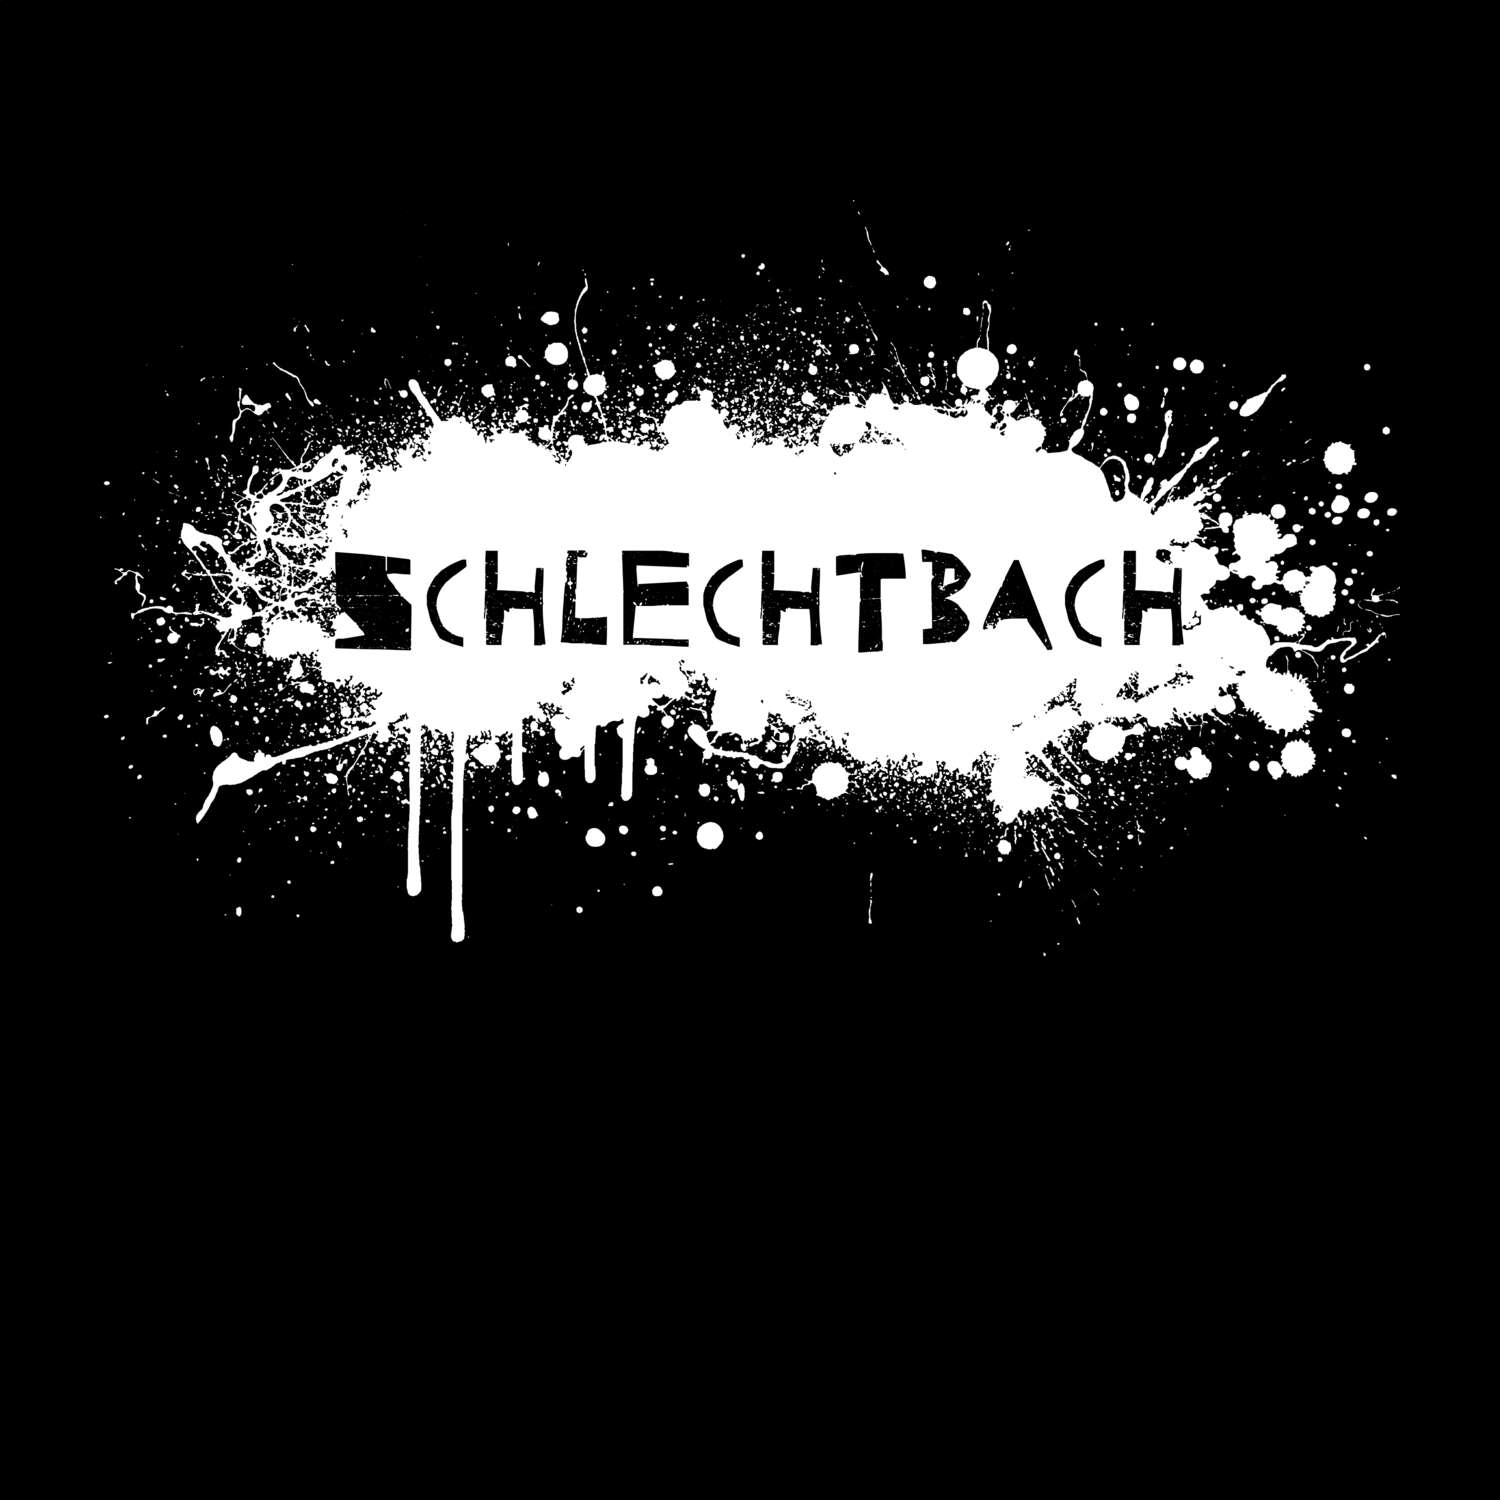 Schlechtbach T-Shirt »Paint Splash Punk«